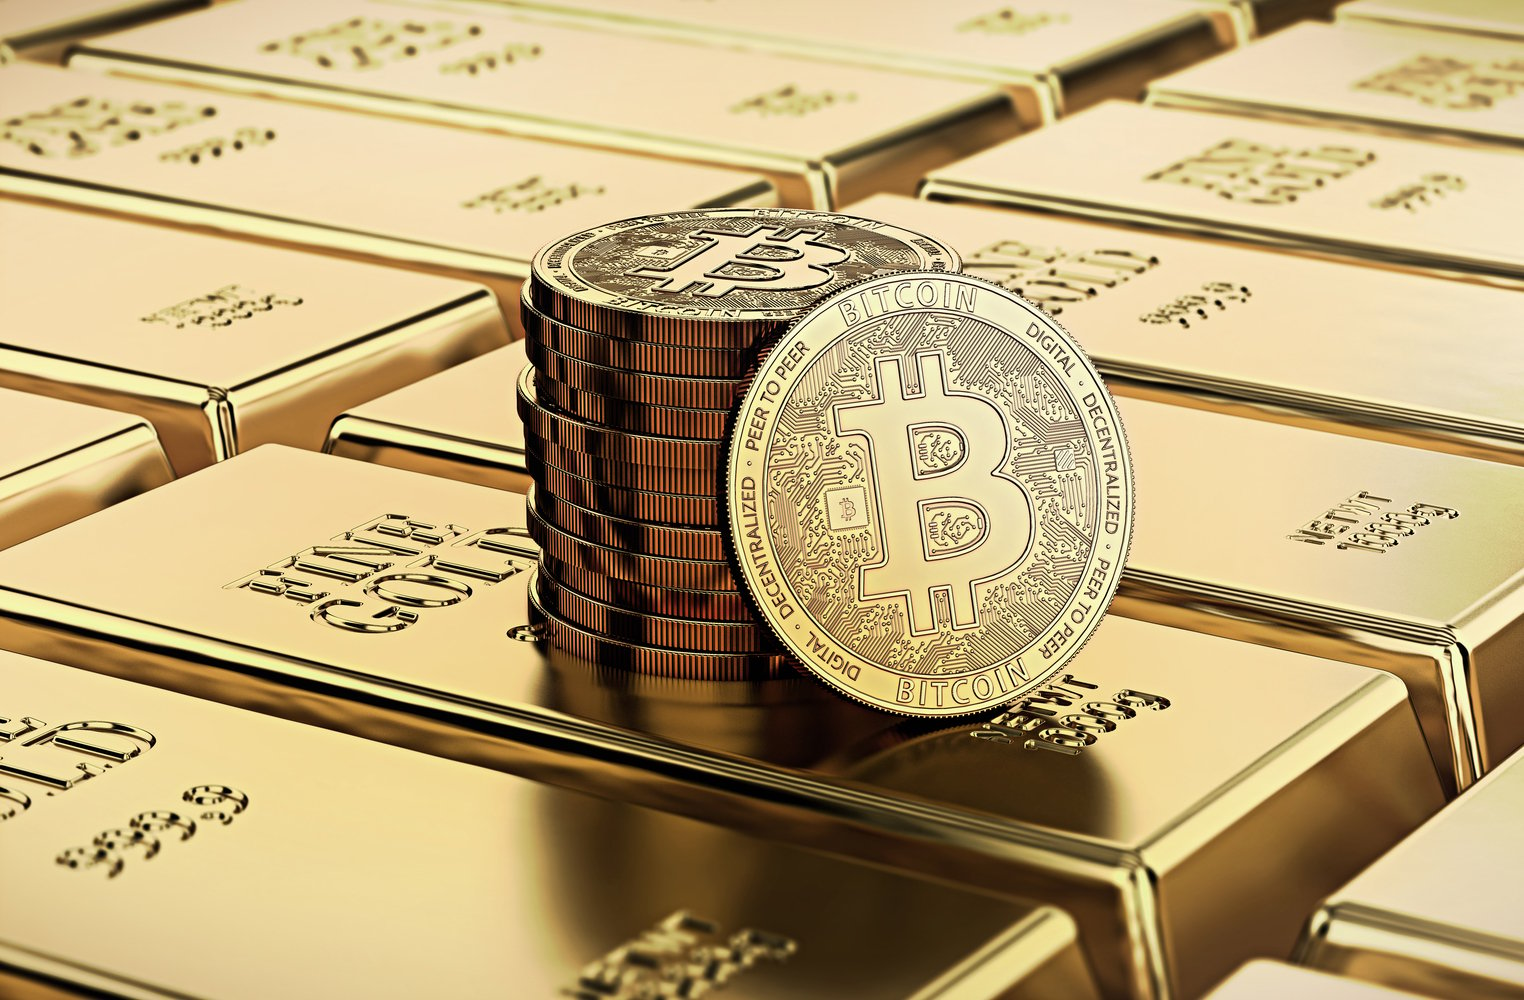 kur prekiaujama bitcoin gold